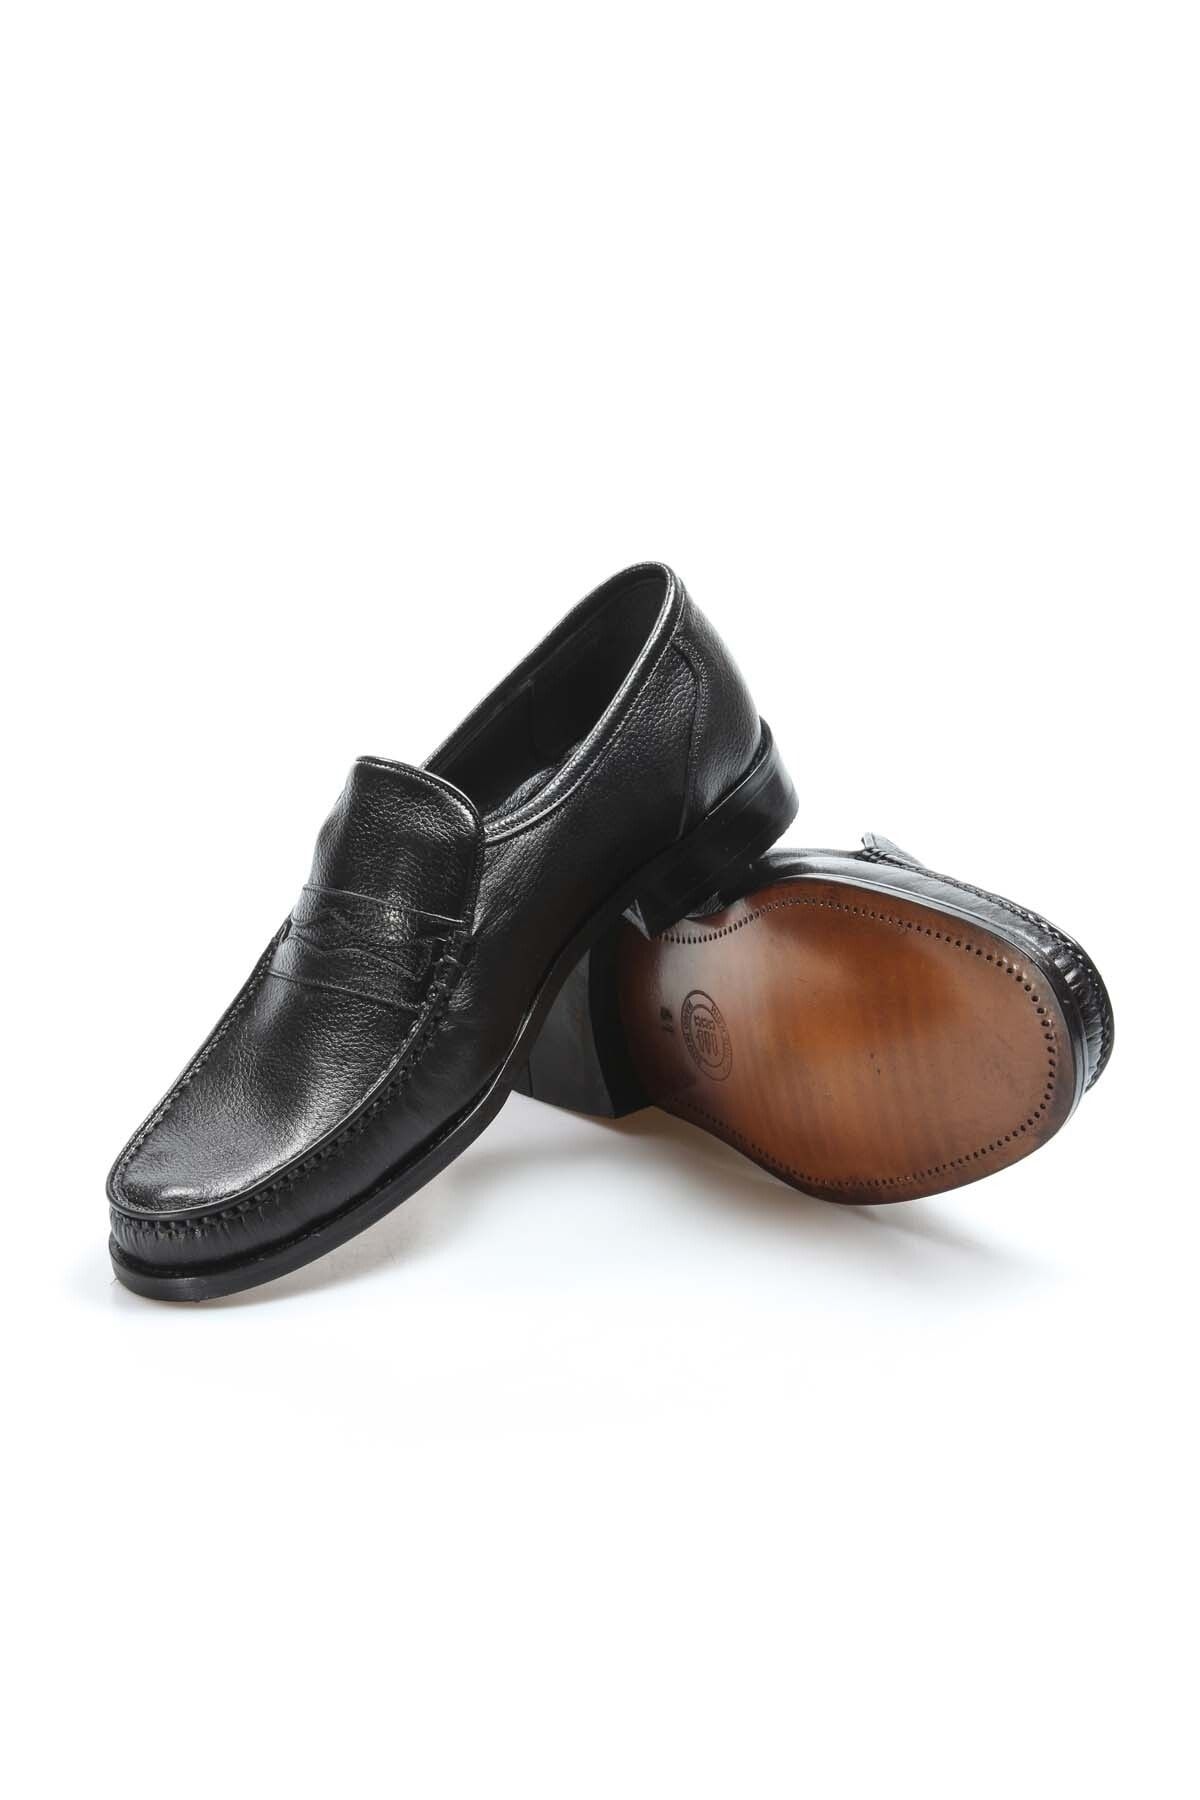 Ayakkabıhane Kösele Taban Içi Dışı Hakiki Deri Siyah Erkek Klasik Ayakkabı Ah08932131830